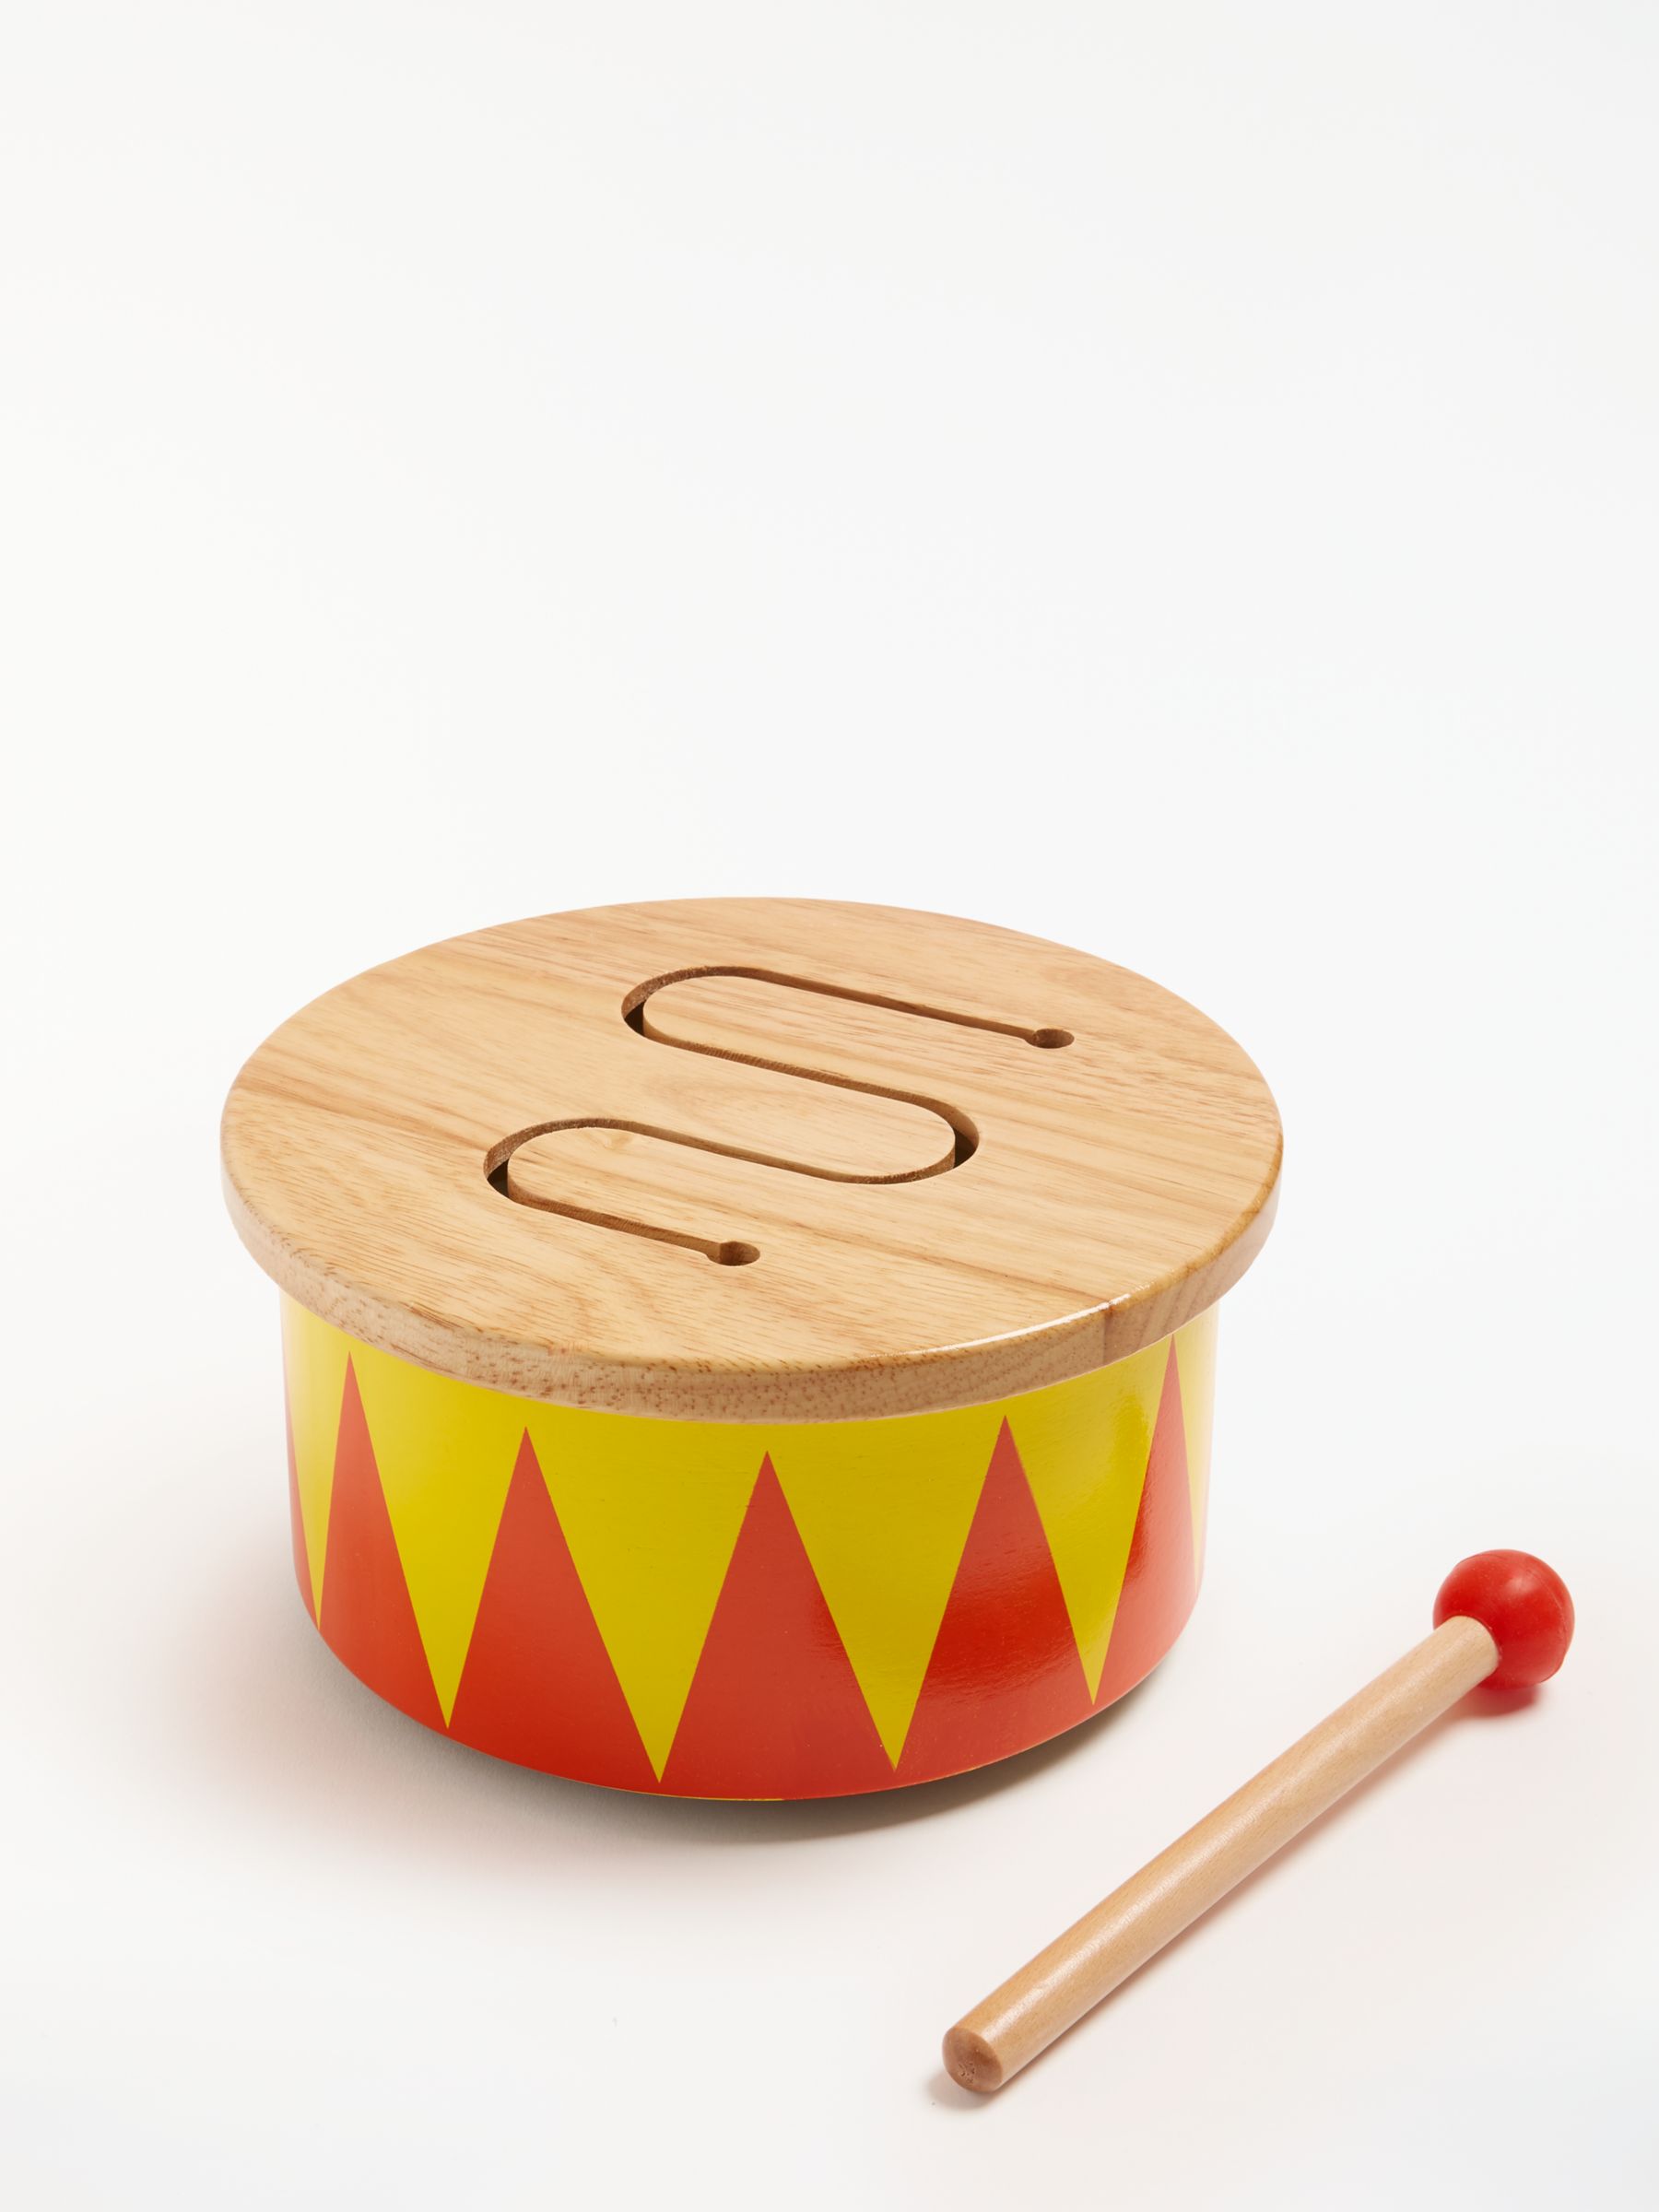 wooden toy drum